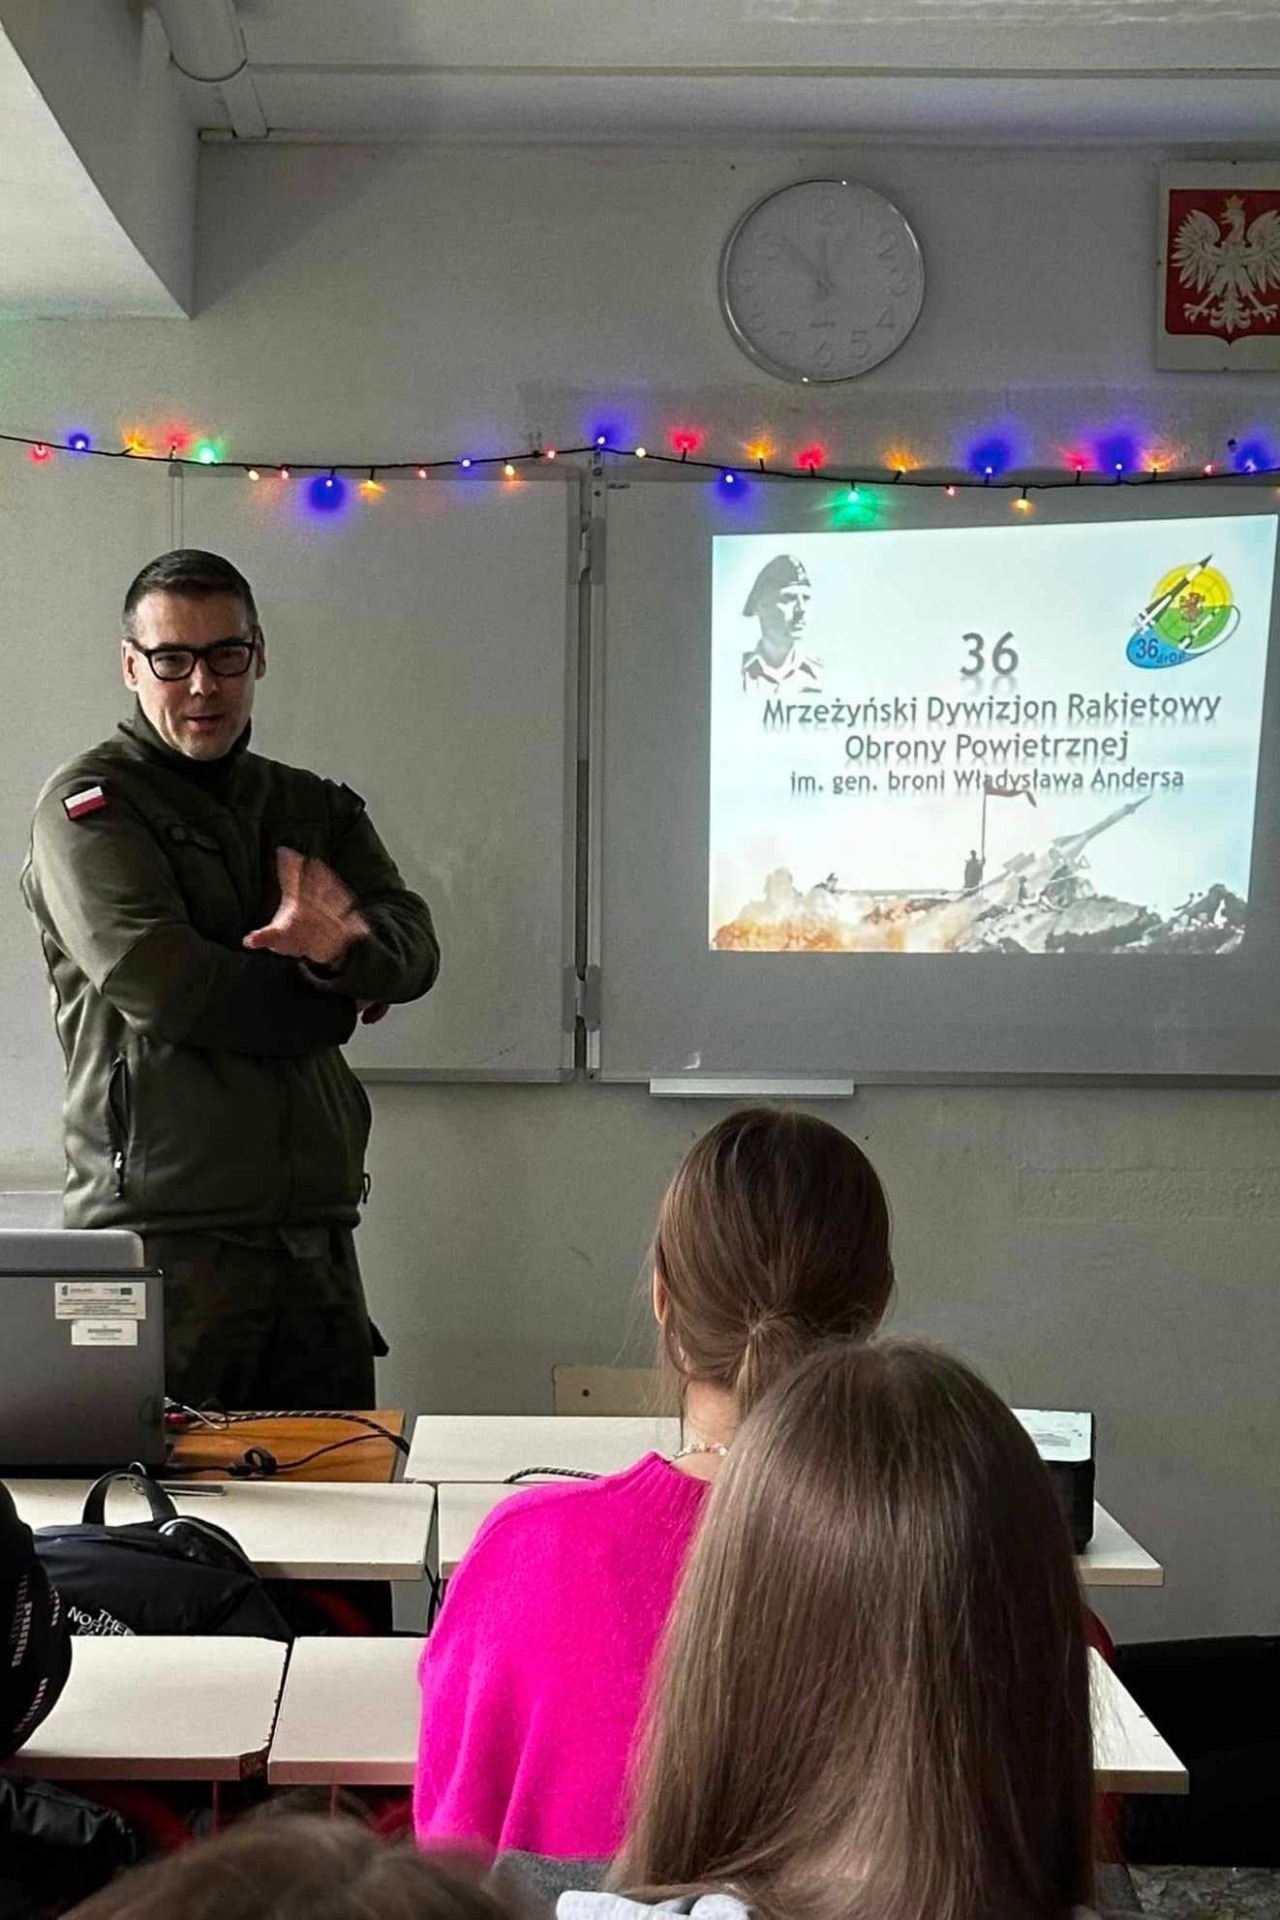 Udział w warsztatach i prezentacji przygotowanych przez żołnierzy z 36 Mrzeżyńskiego Dywizjonu Rakietowego Obrony Powietrznej - Obrazek 4